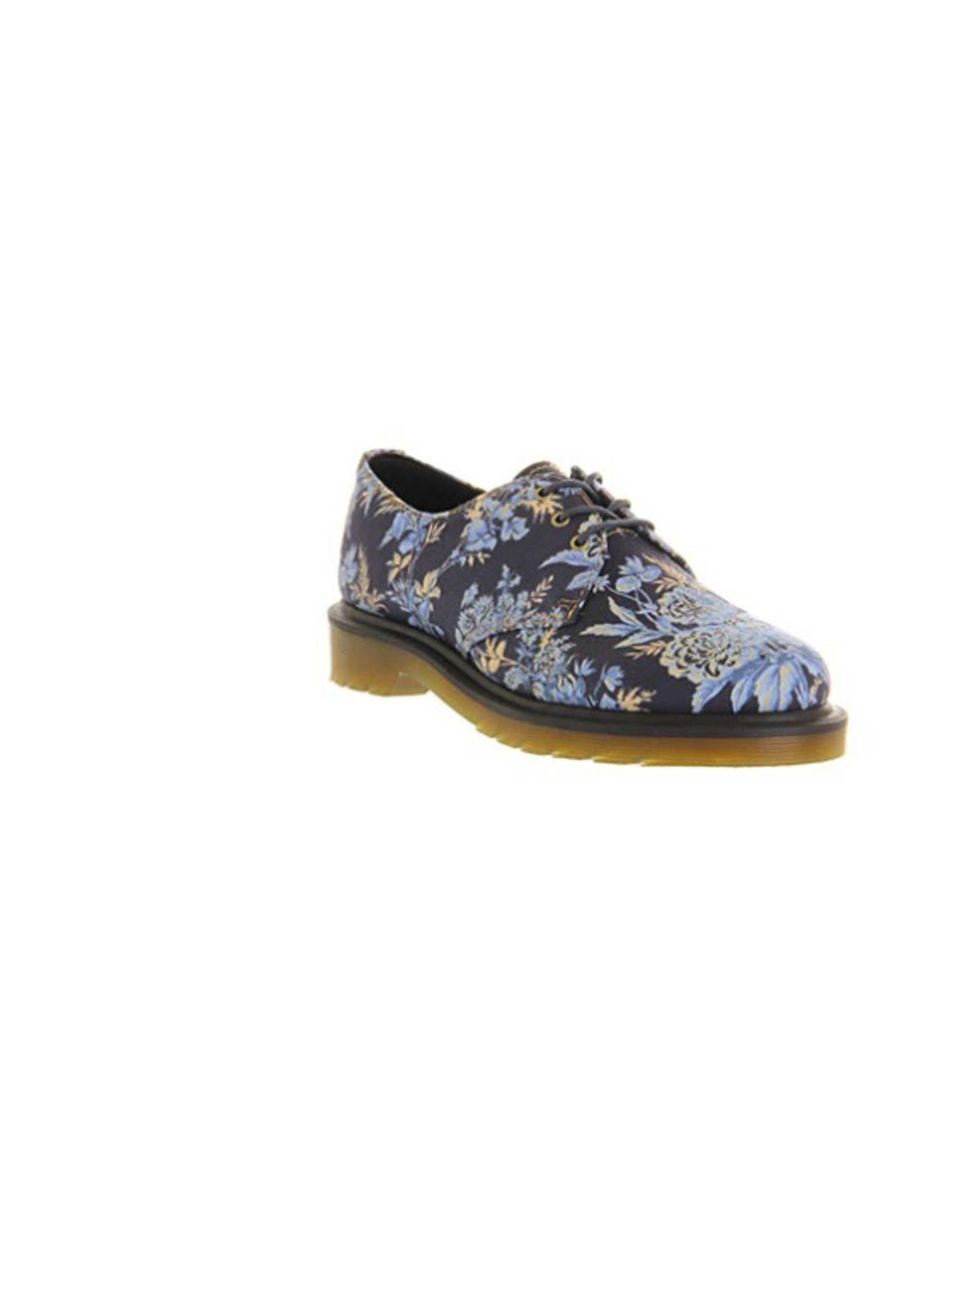 <p><a href="http://store.drmartens.co.uk/p-8737-dr-martens-briar-shoe.aspx">Dr Martens</a>, 1461 Shoe, £80</p>